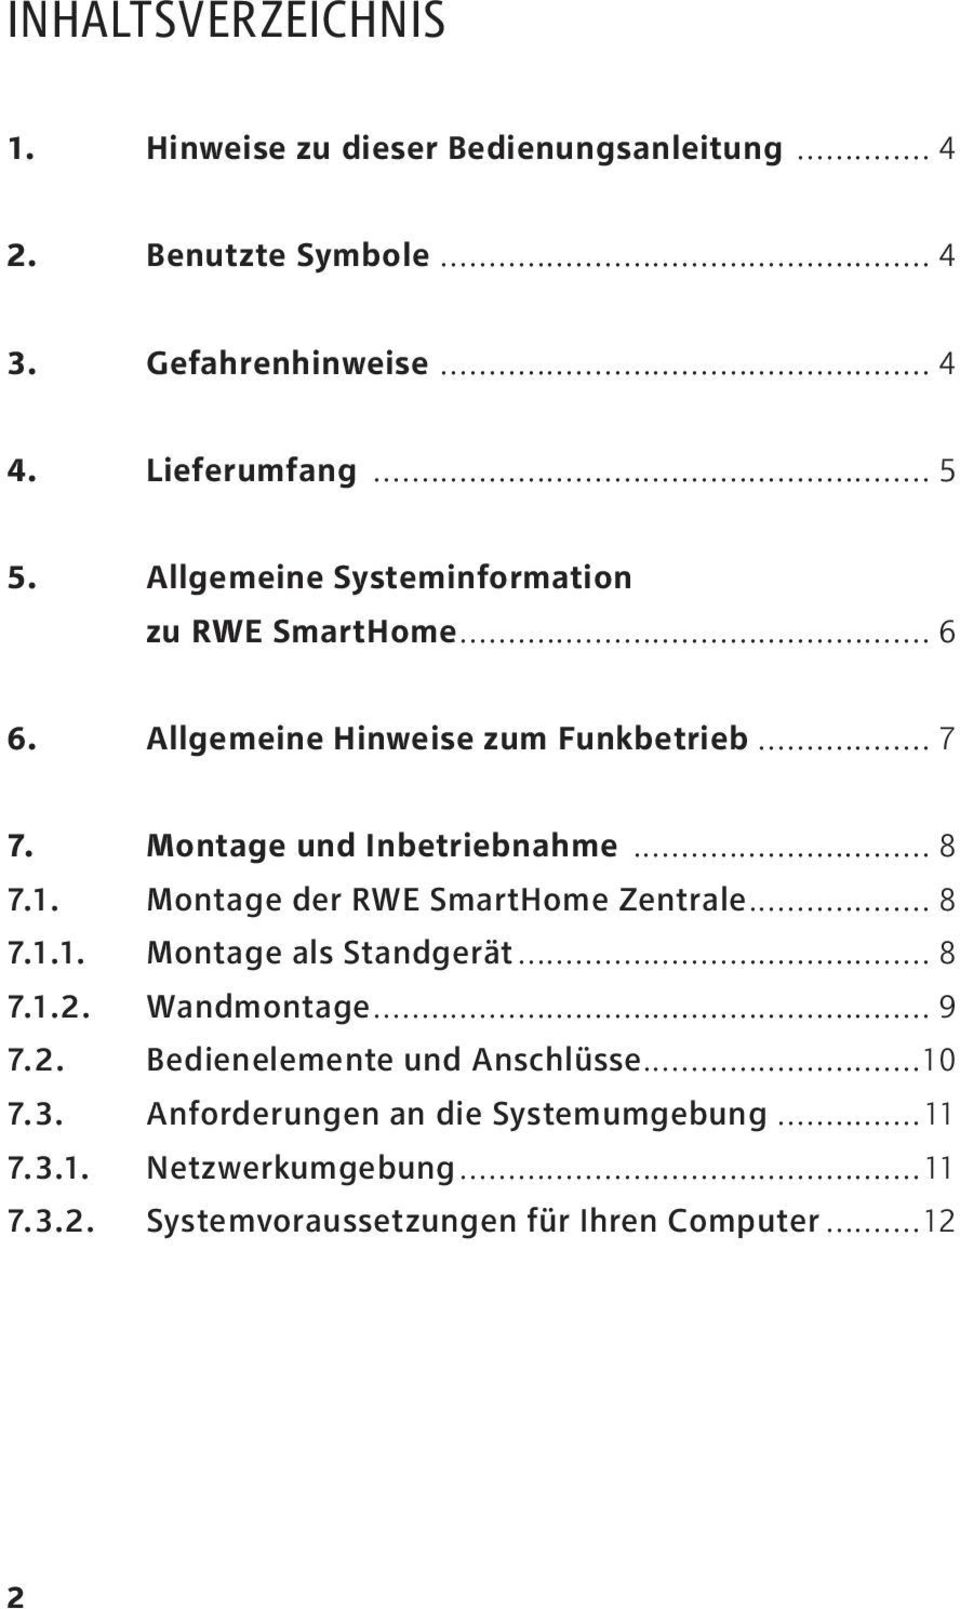 .. 8 7.1. Montage der RWE SmartHome Zentrale... 8 7.1.1. Montage als Standgerät... 8 7.1.2. Wandmontage... 9 7.2. Bedienelemente und Anschlüsse.